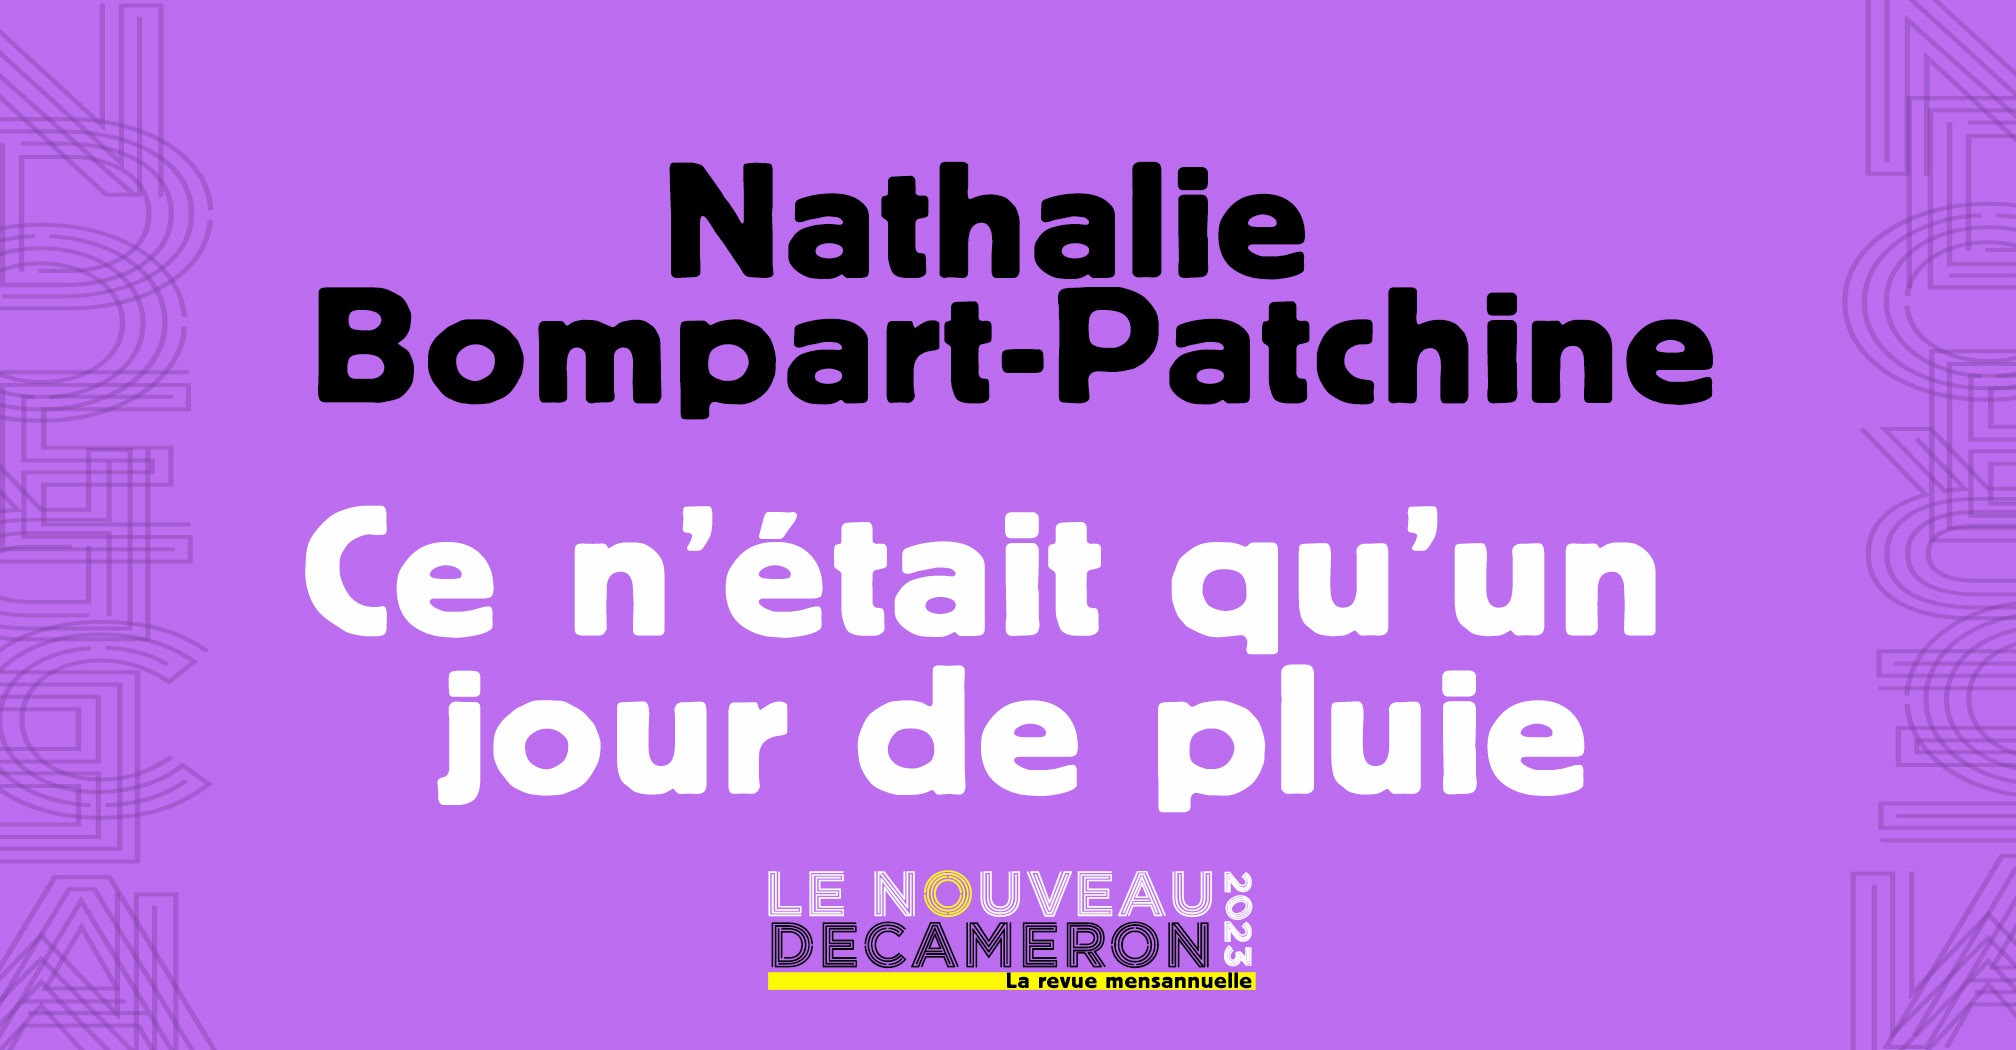 Nathalie Bompart Patchine - Ce n'était qu'un jour de pluie